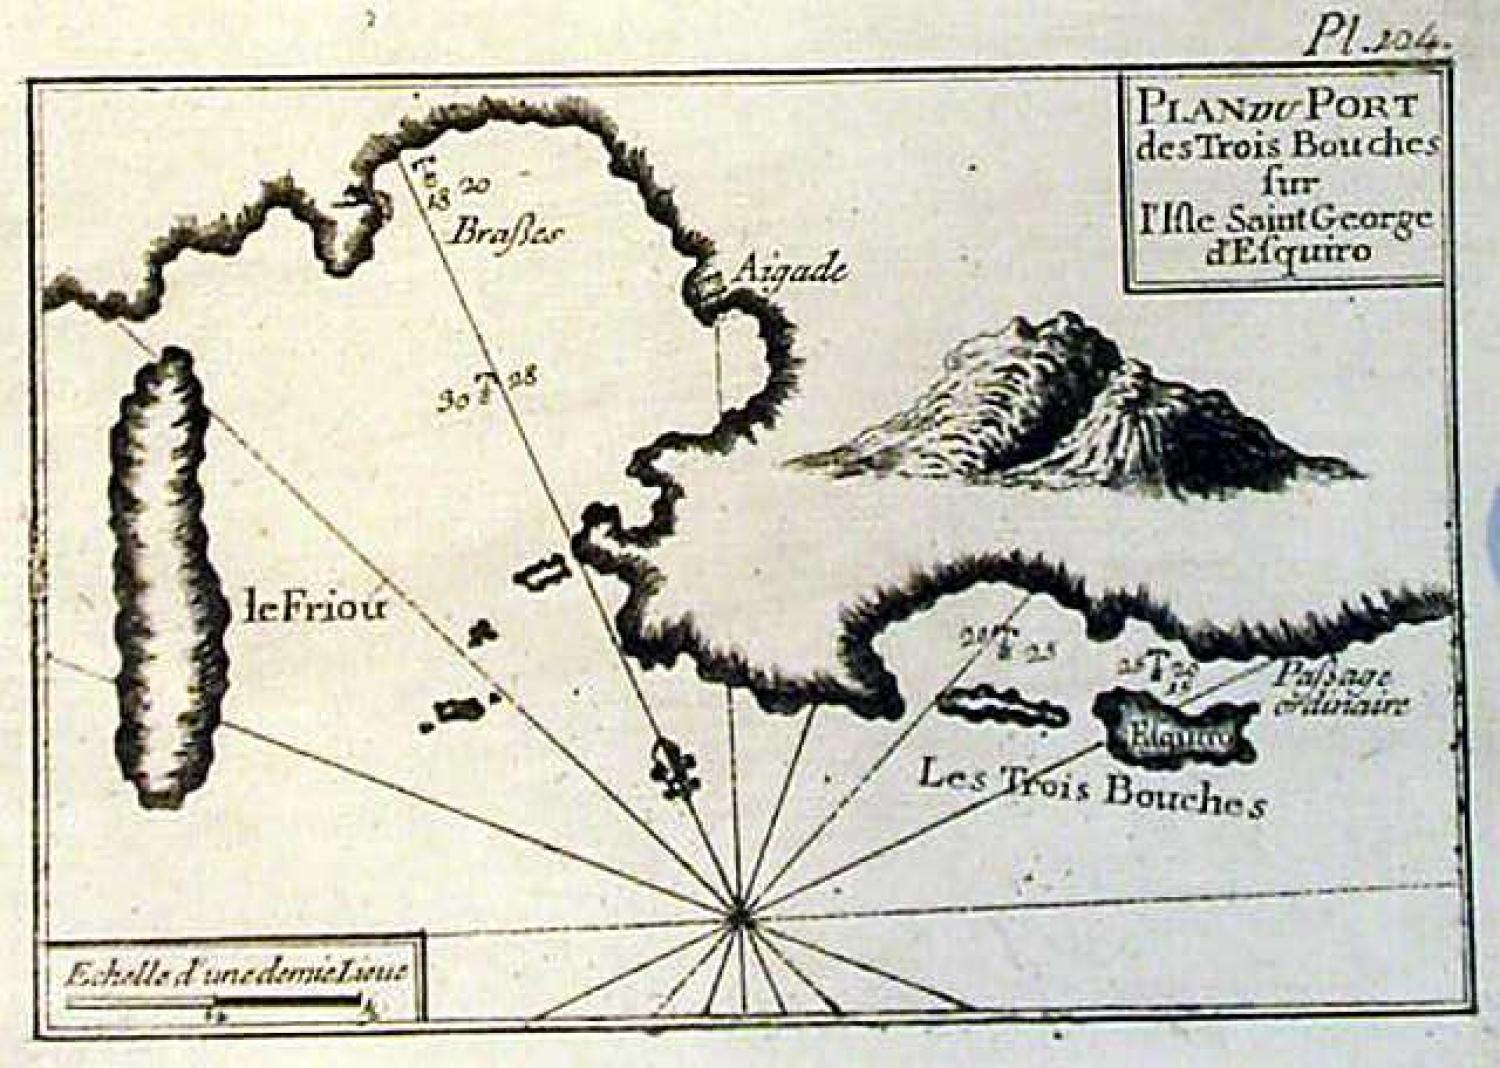 SOLD Plan du Port des Trois Bouches sur l'isle Saint George d'esquiro